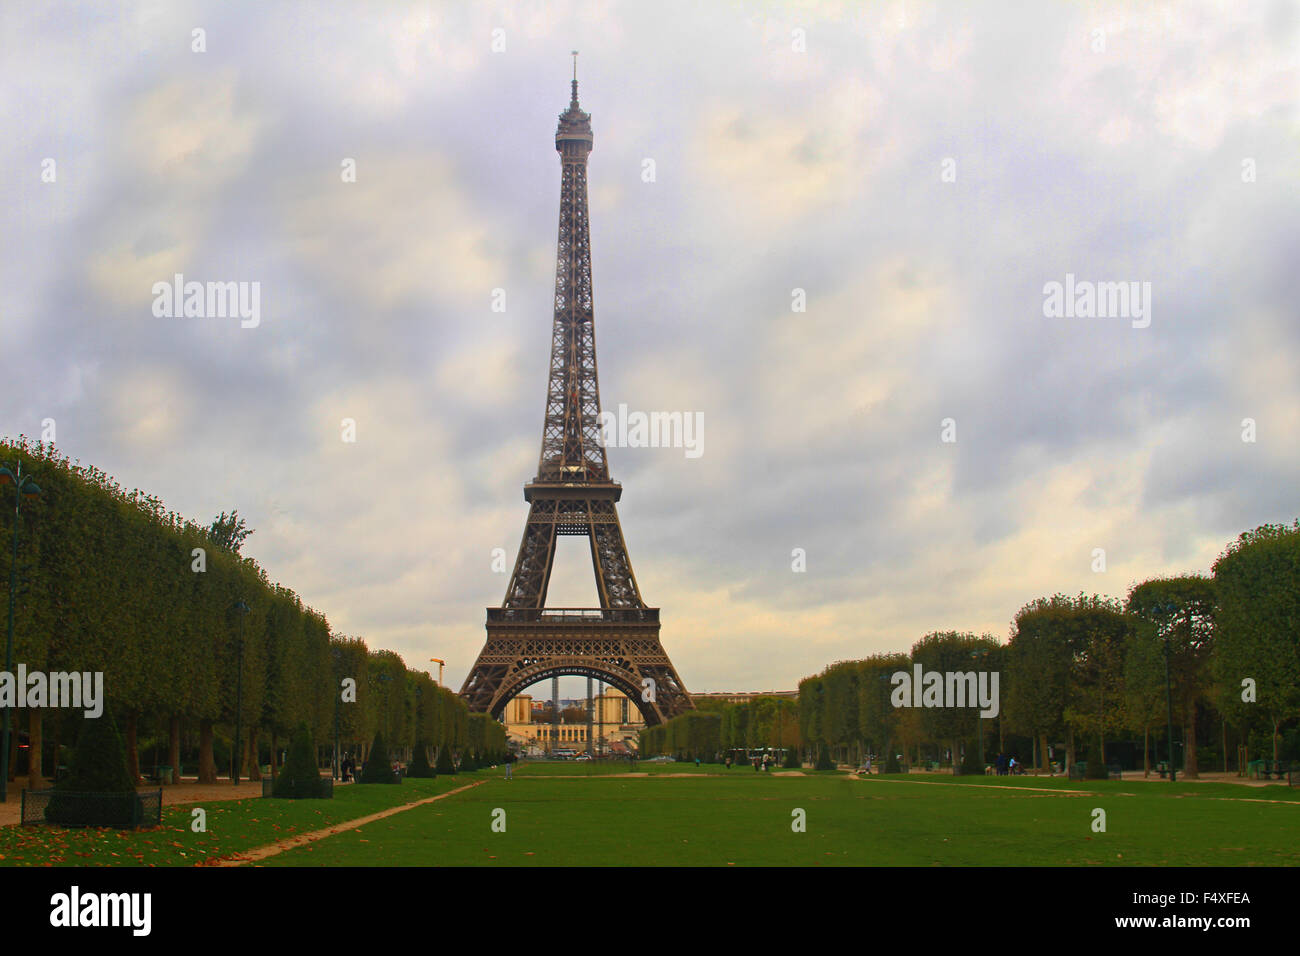 La tour Eiffel viewed from Champ de Mars in Paris, France Stock Photo